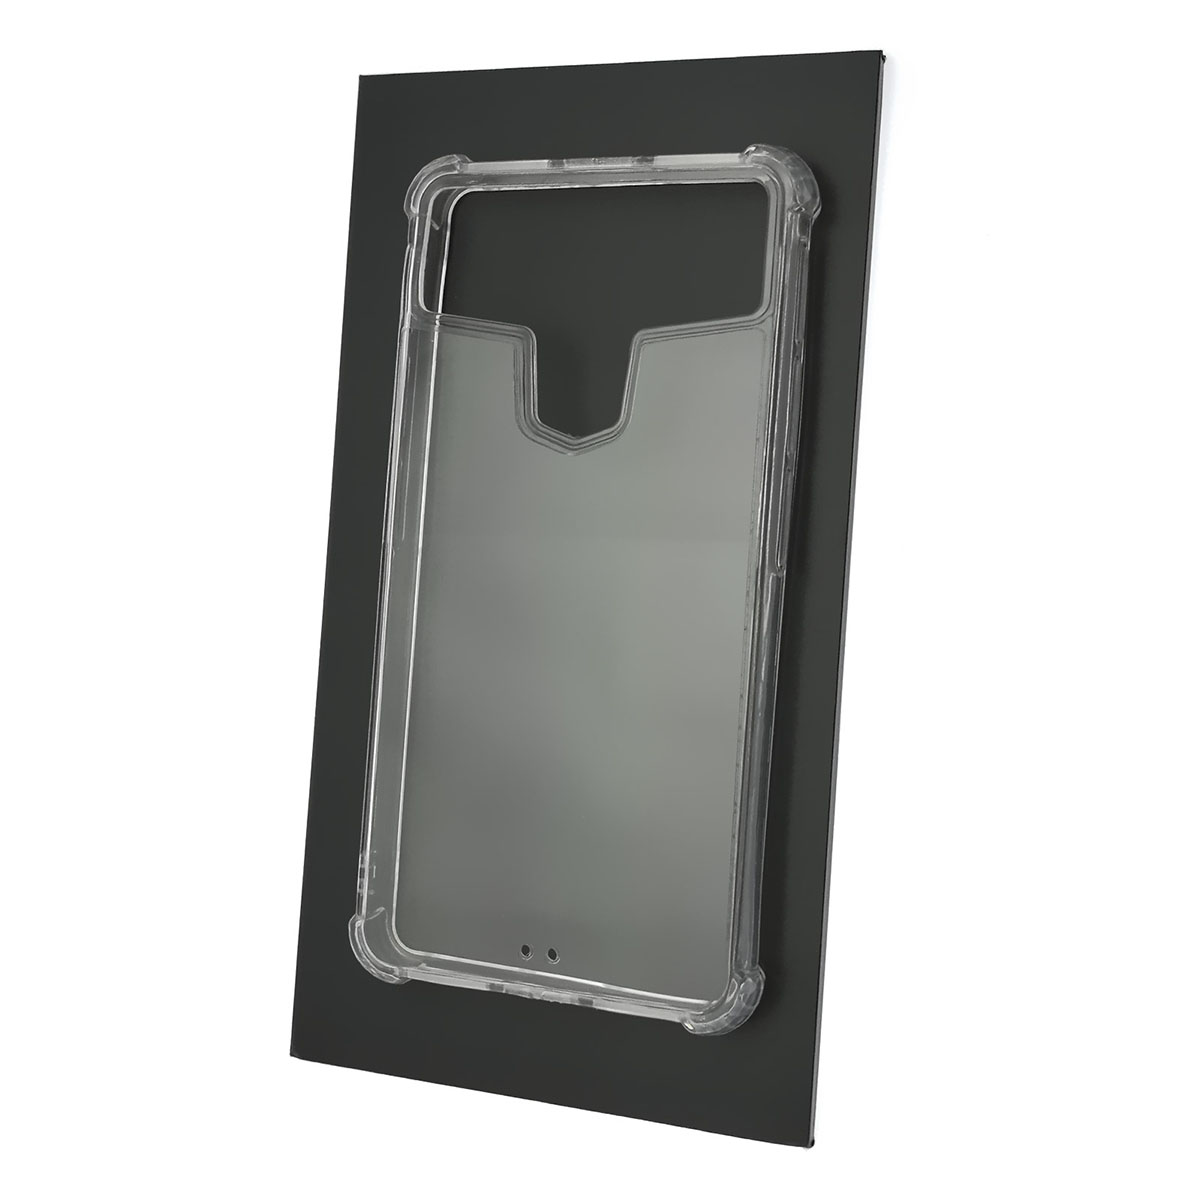 Чехол накладка универсальная TPU CASE для смартфонов размером 5.0 - 5.3, №2, силикон, цвет прозрачный.